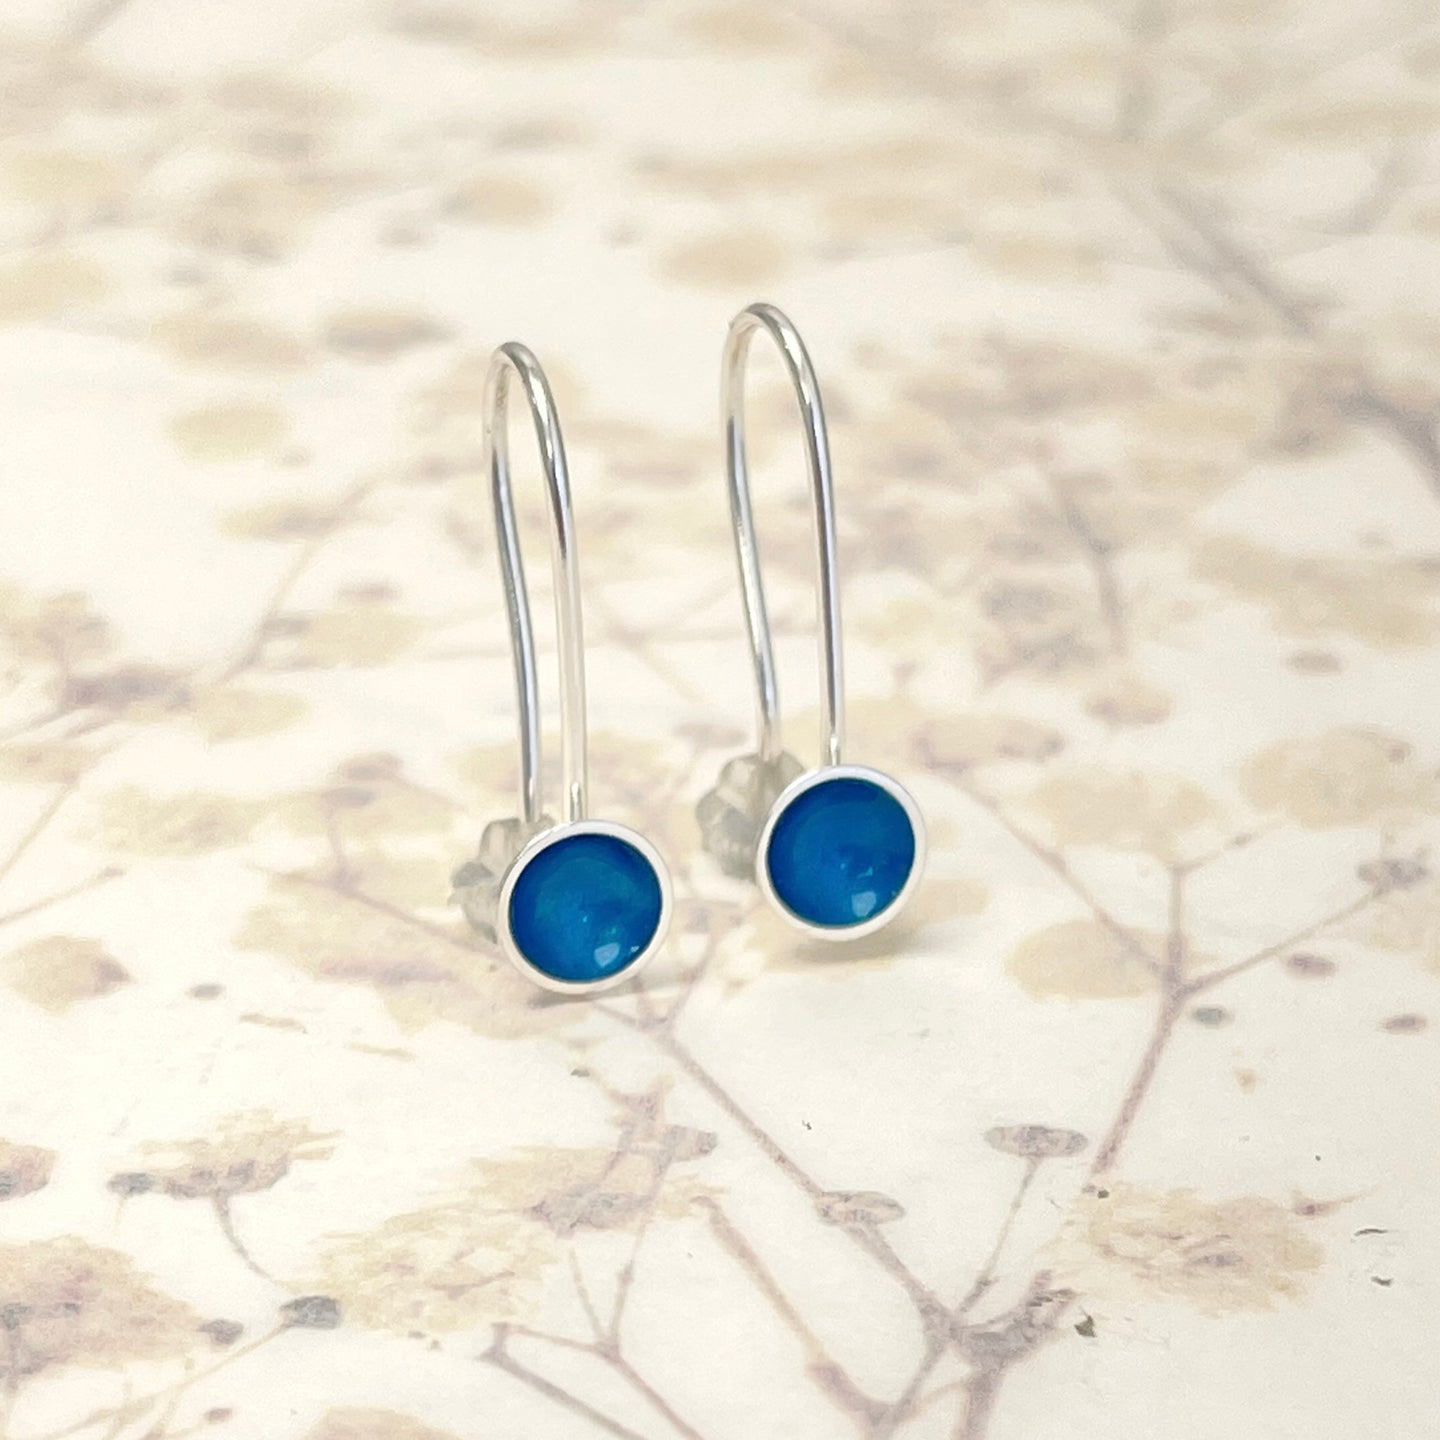 Silver and kingfisher blue enamel drop earrings